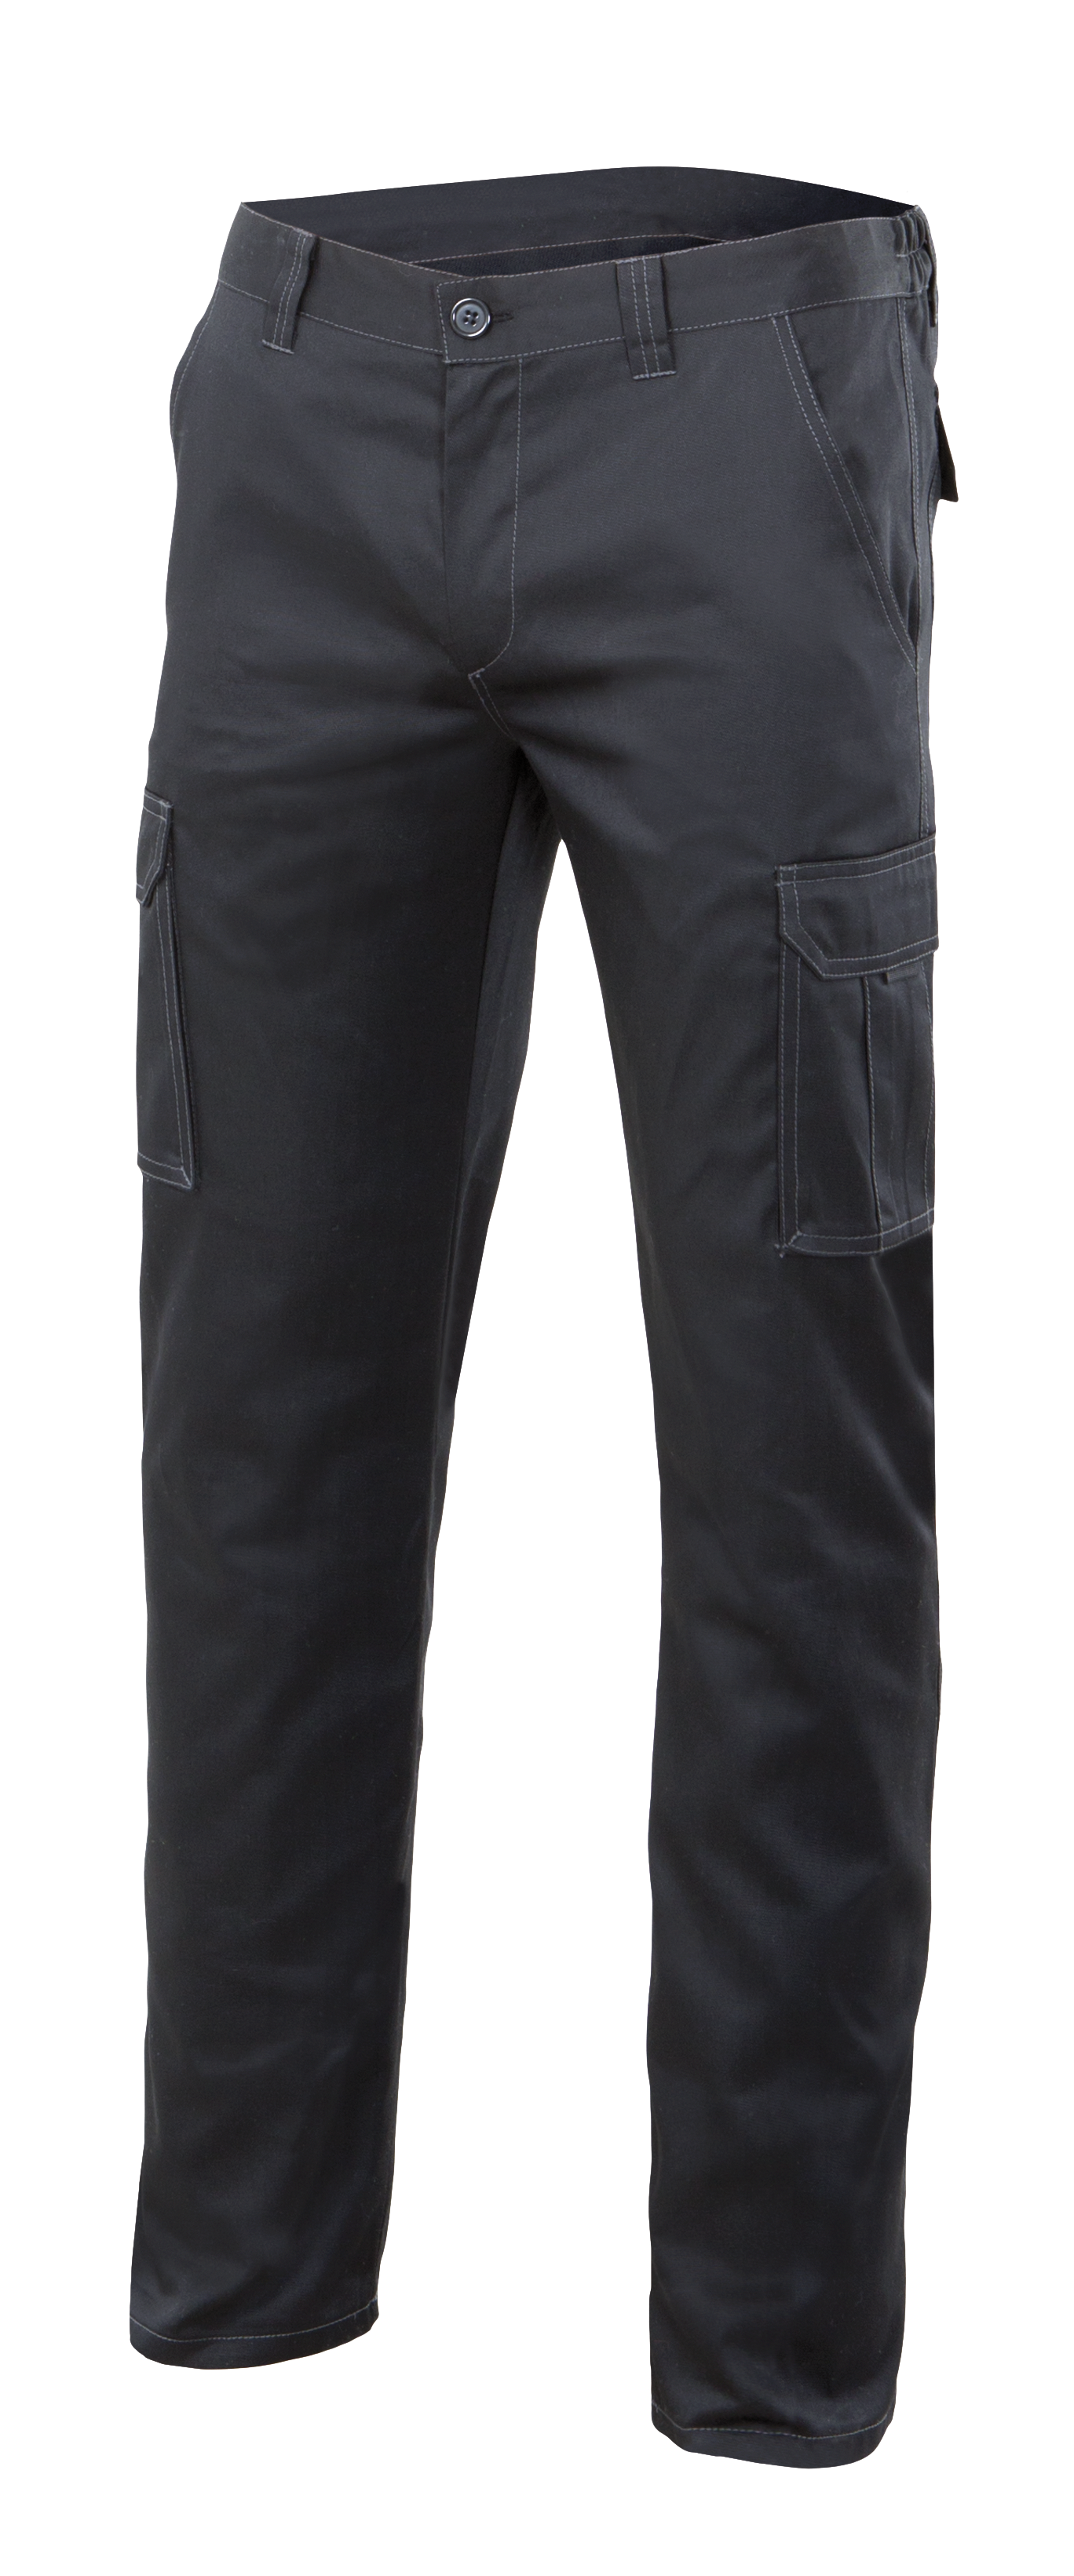 Pantalon de trabajo multibolsillo strech negro t48